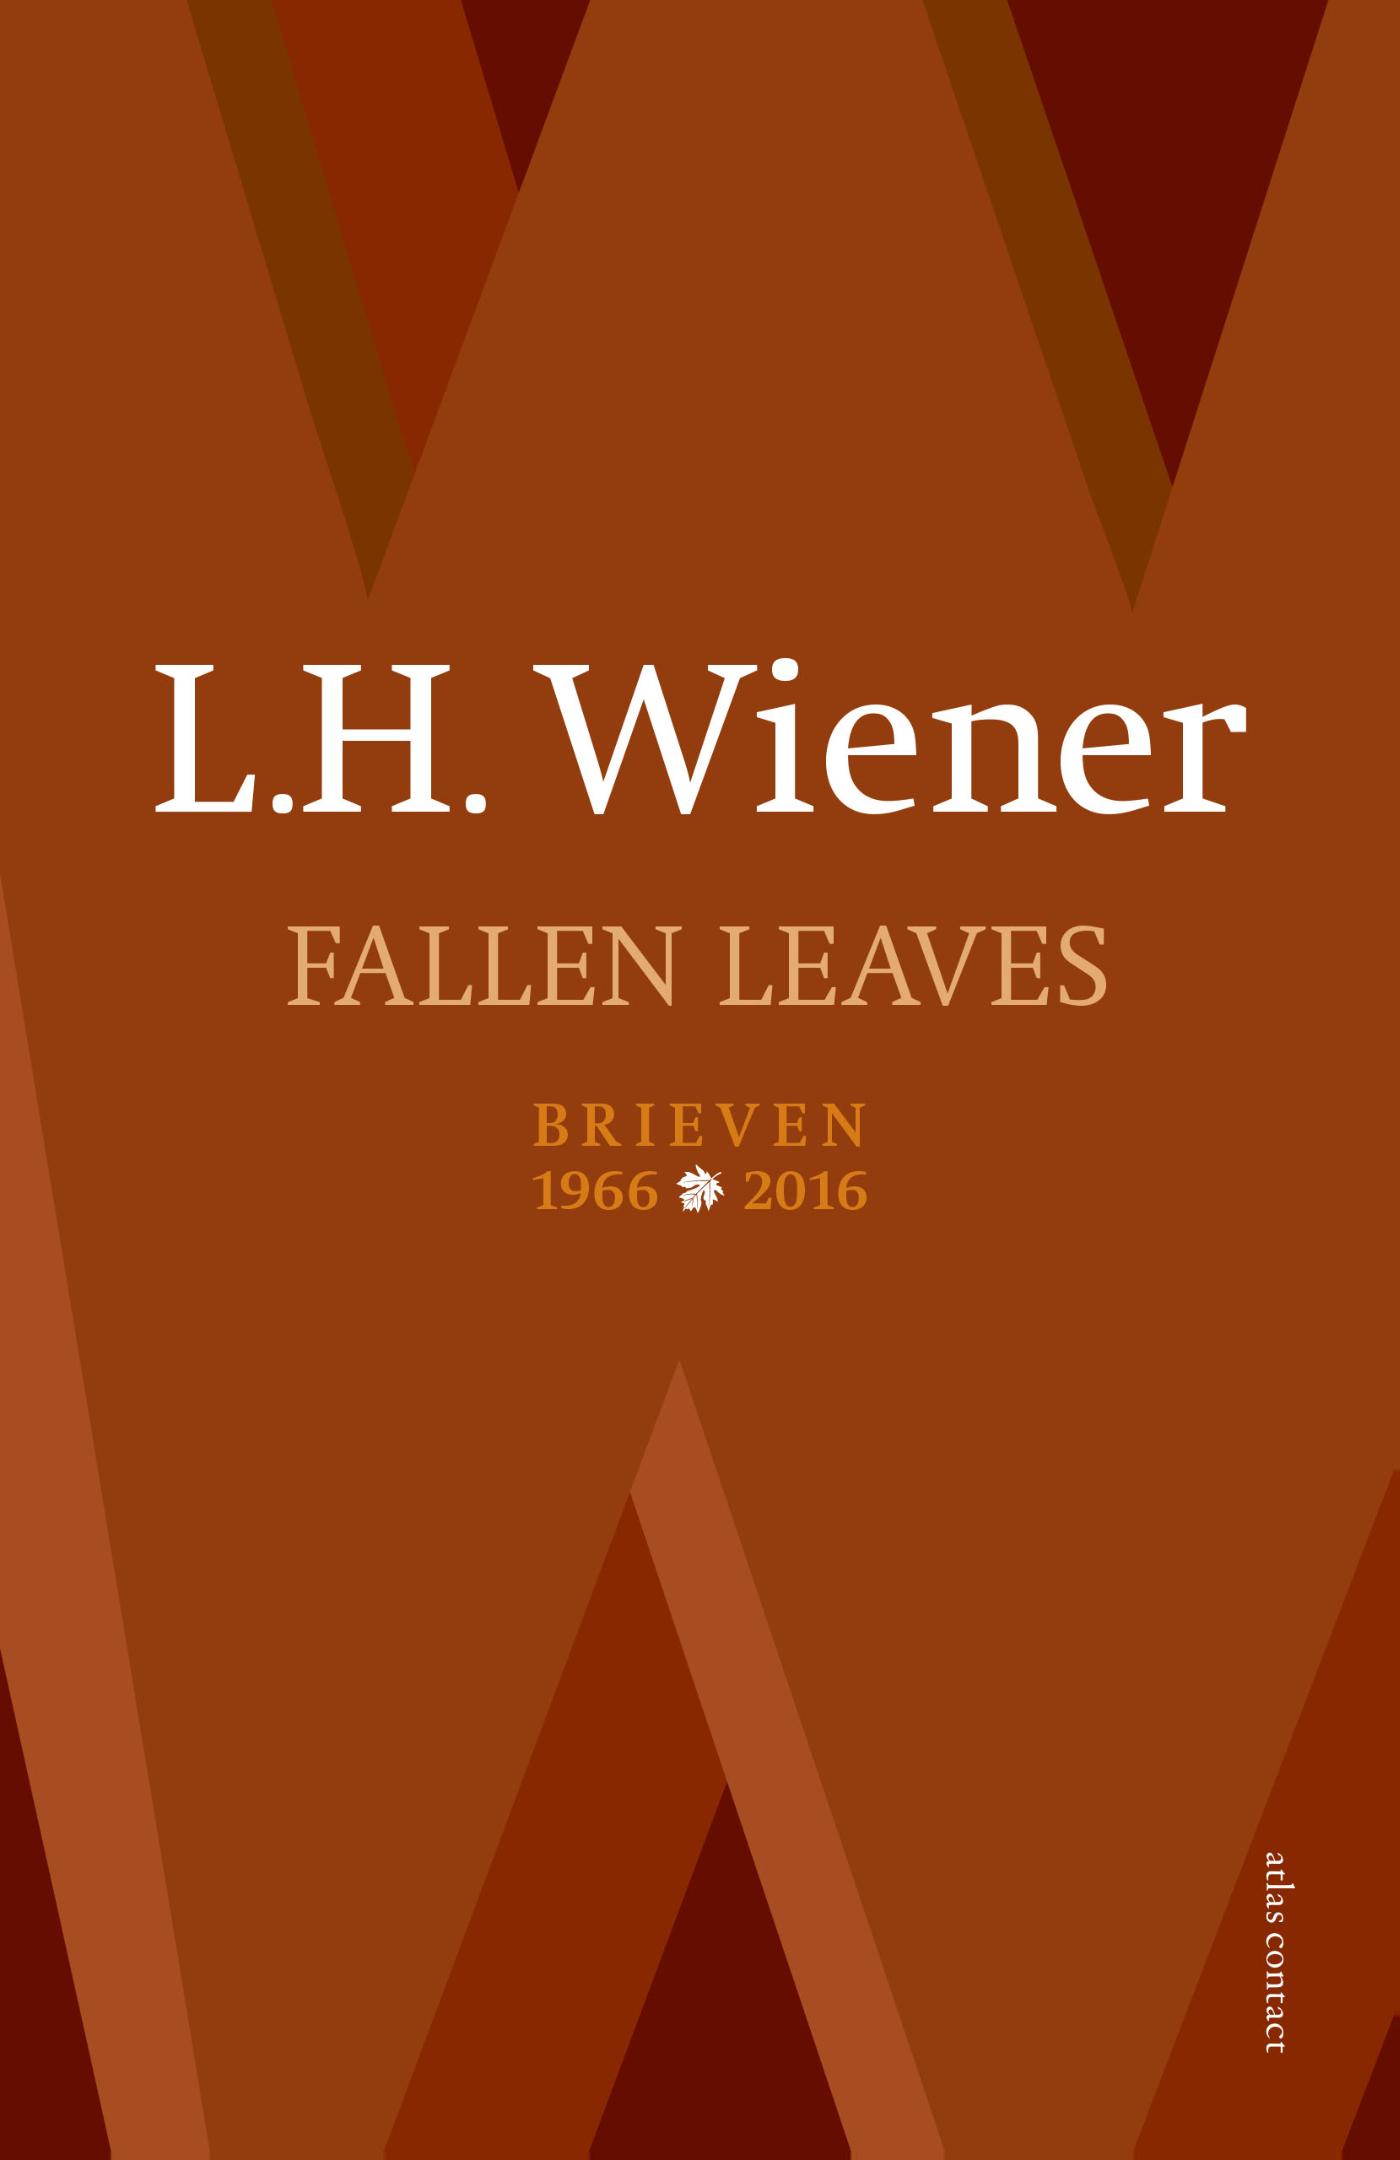 Fallen leaves (Ebook)